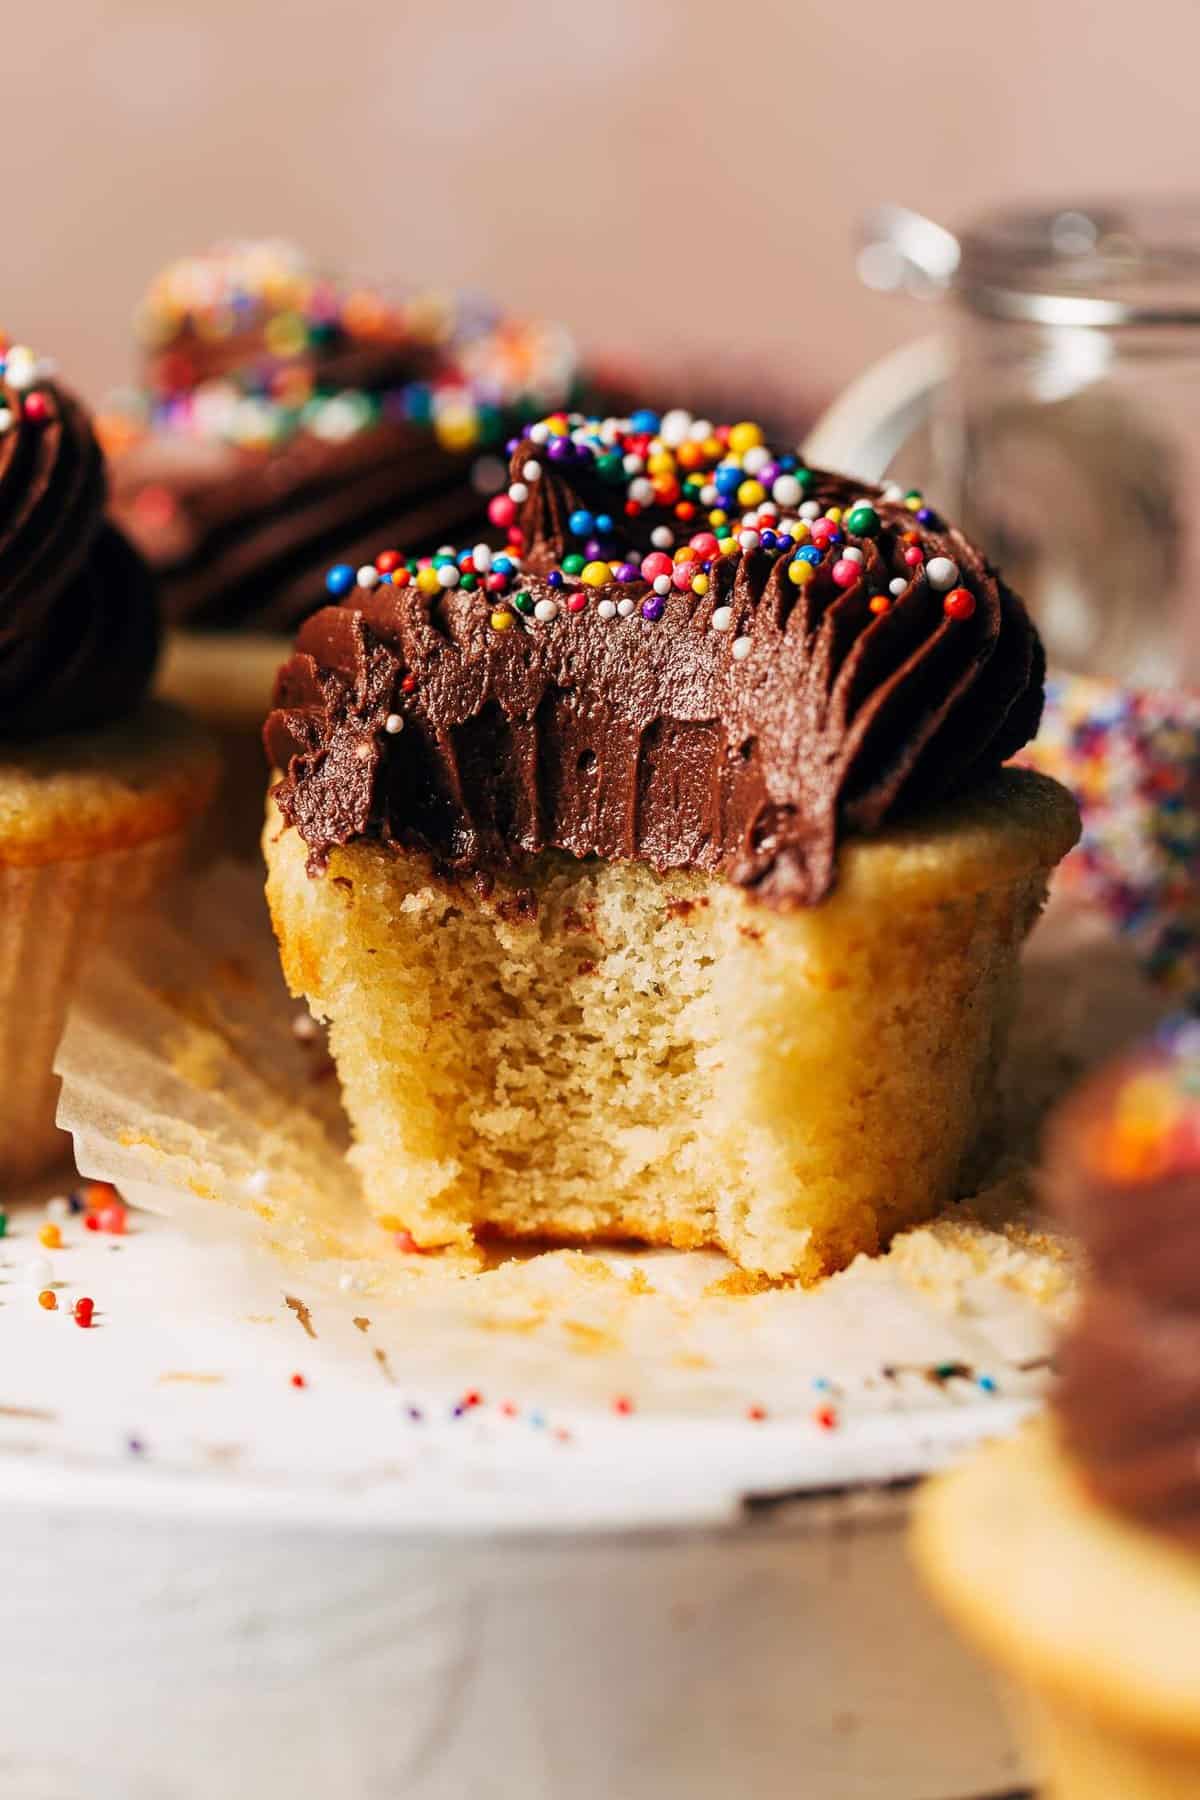 https://butternutbakeryblog.com/wp-content/uploads/2022/08/gluten-free-vanilla-cupcakes.jpg